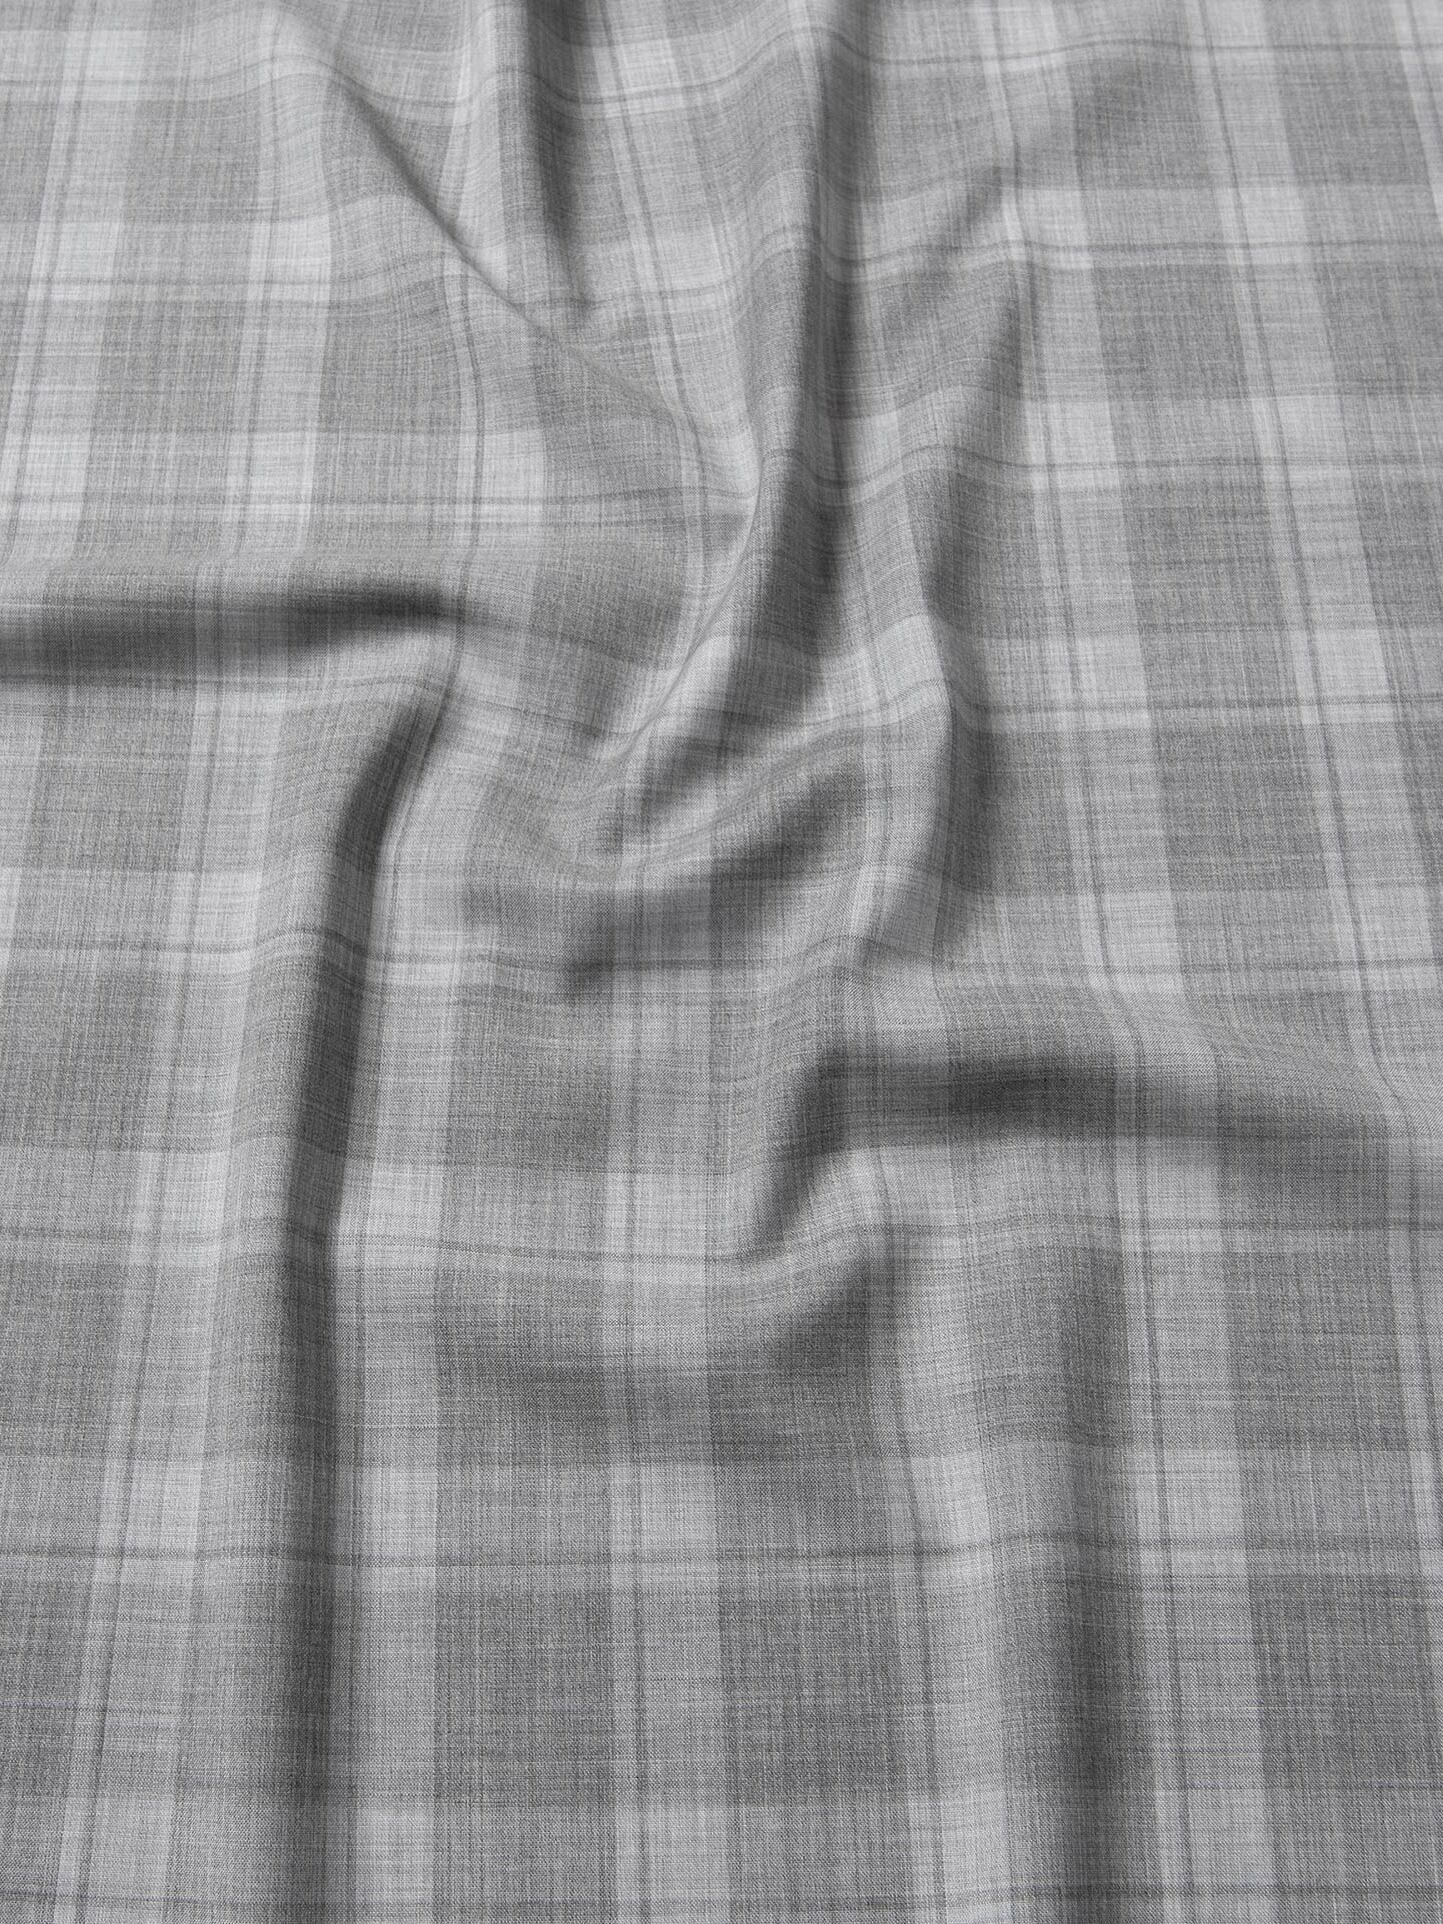 Reda Merino Wool Grey Tonal Plaid Shirts by Proper Cloth